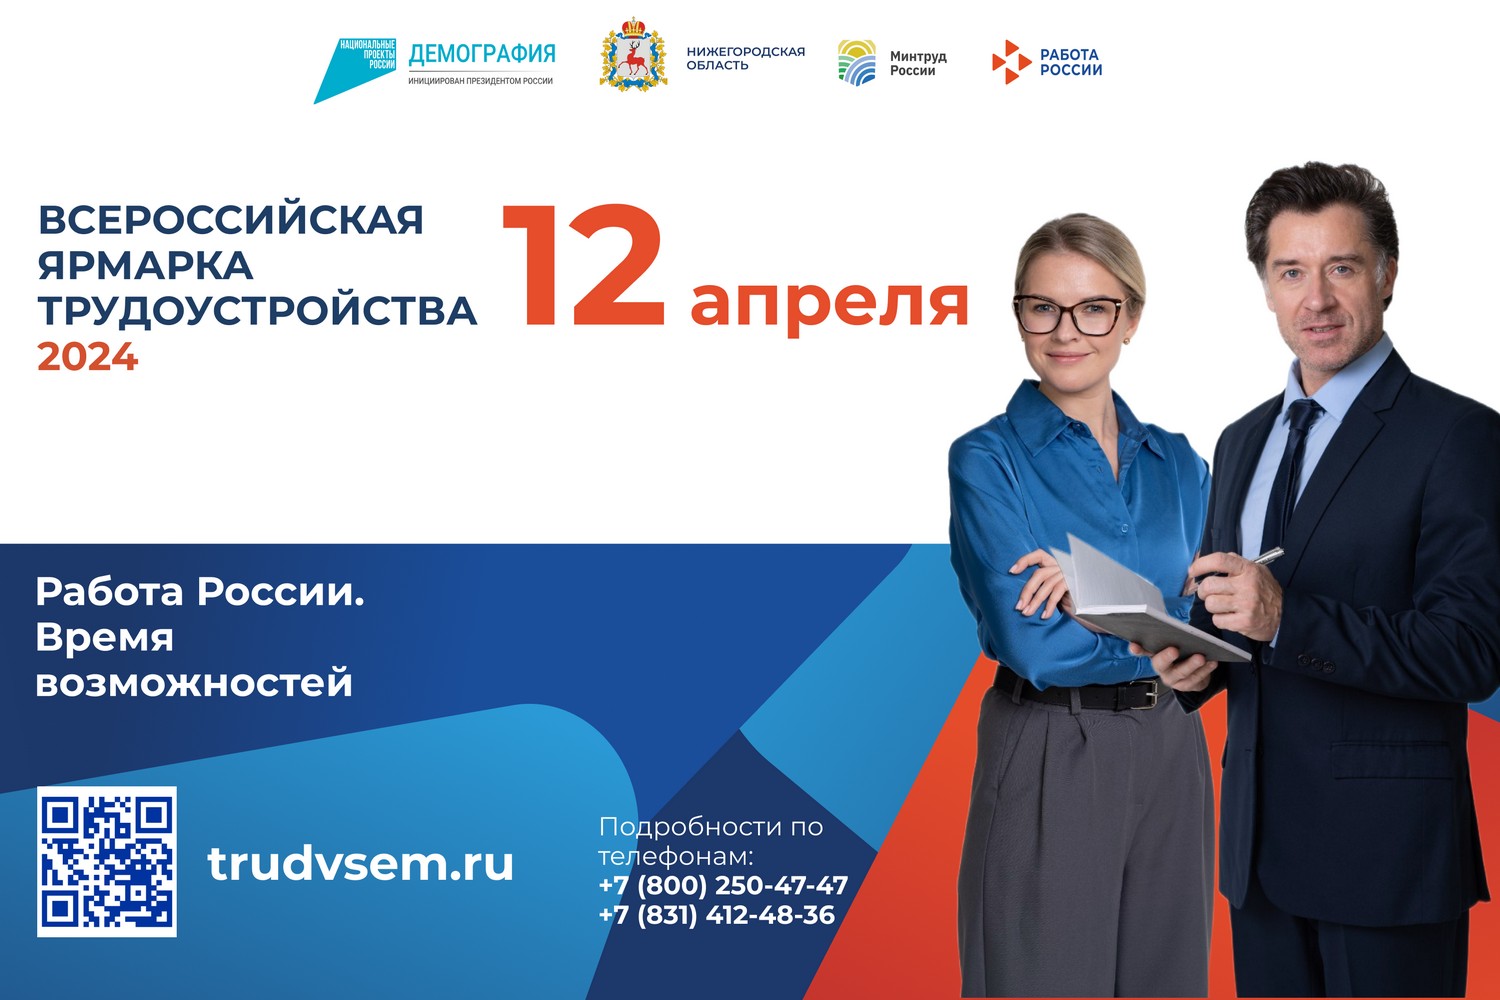 Более 300 предприятий представят свои вакансии на региональном этапе Всероссийской ярмарки трудоустройства в Нижегородской области